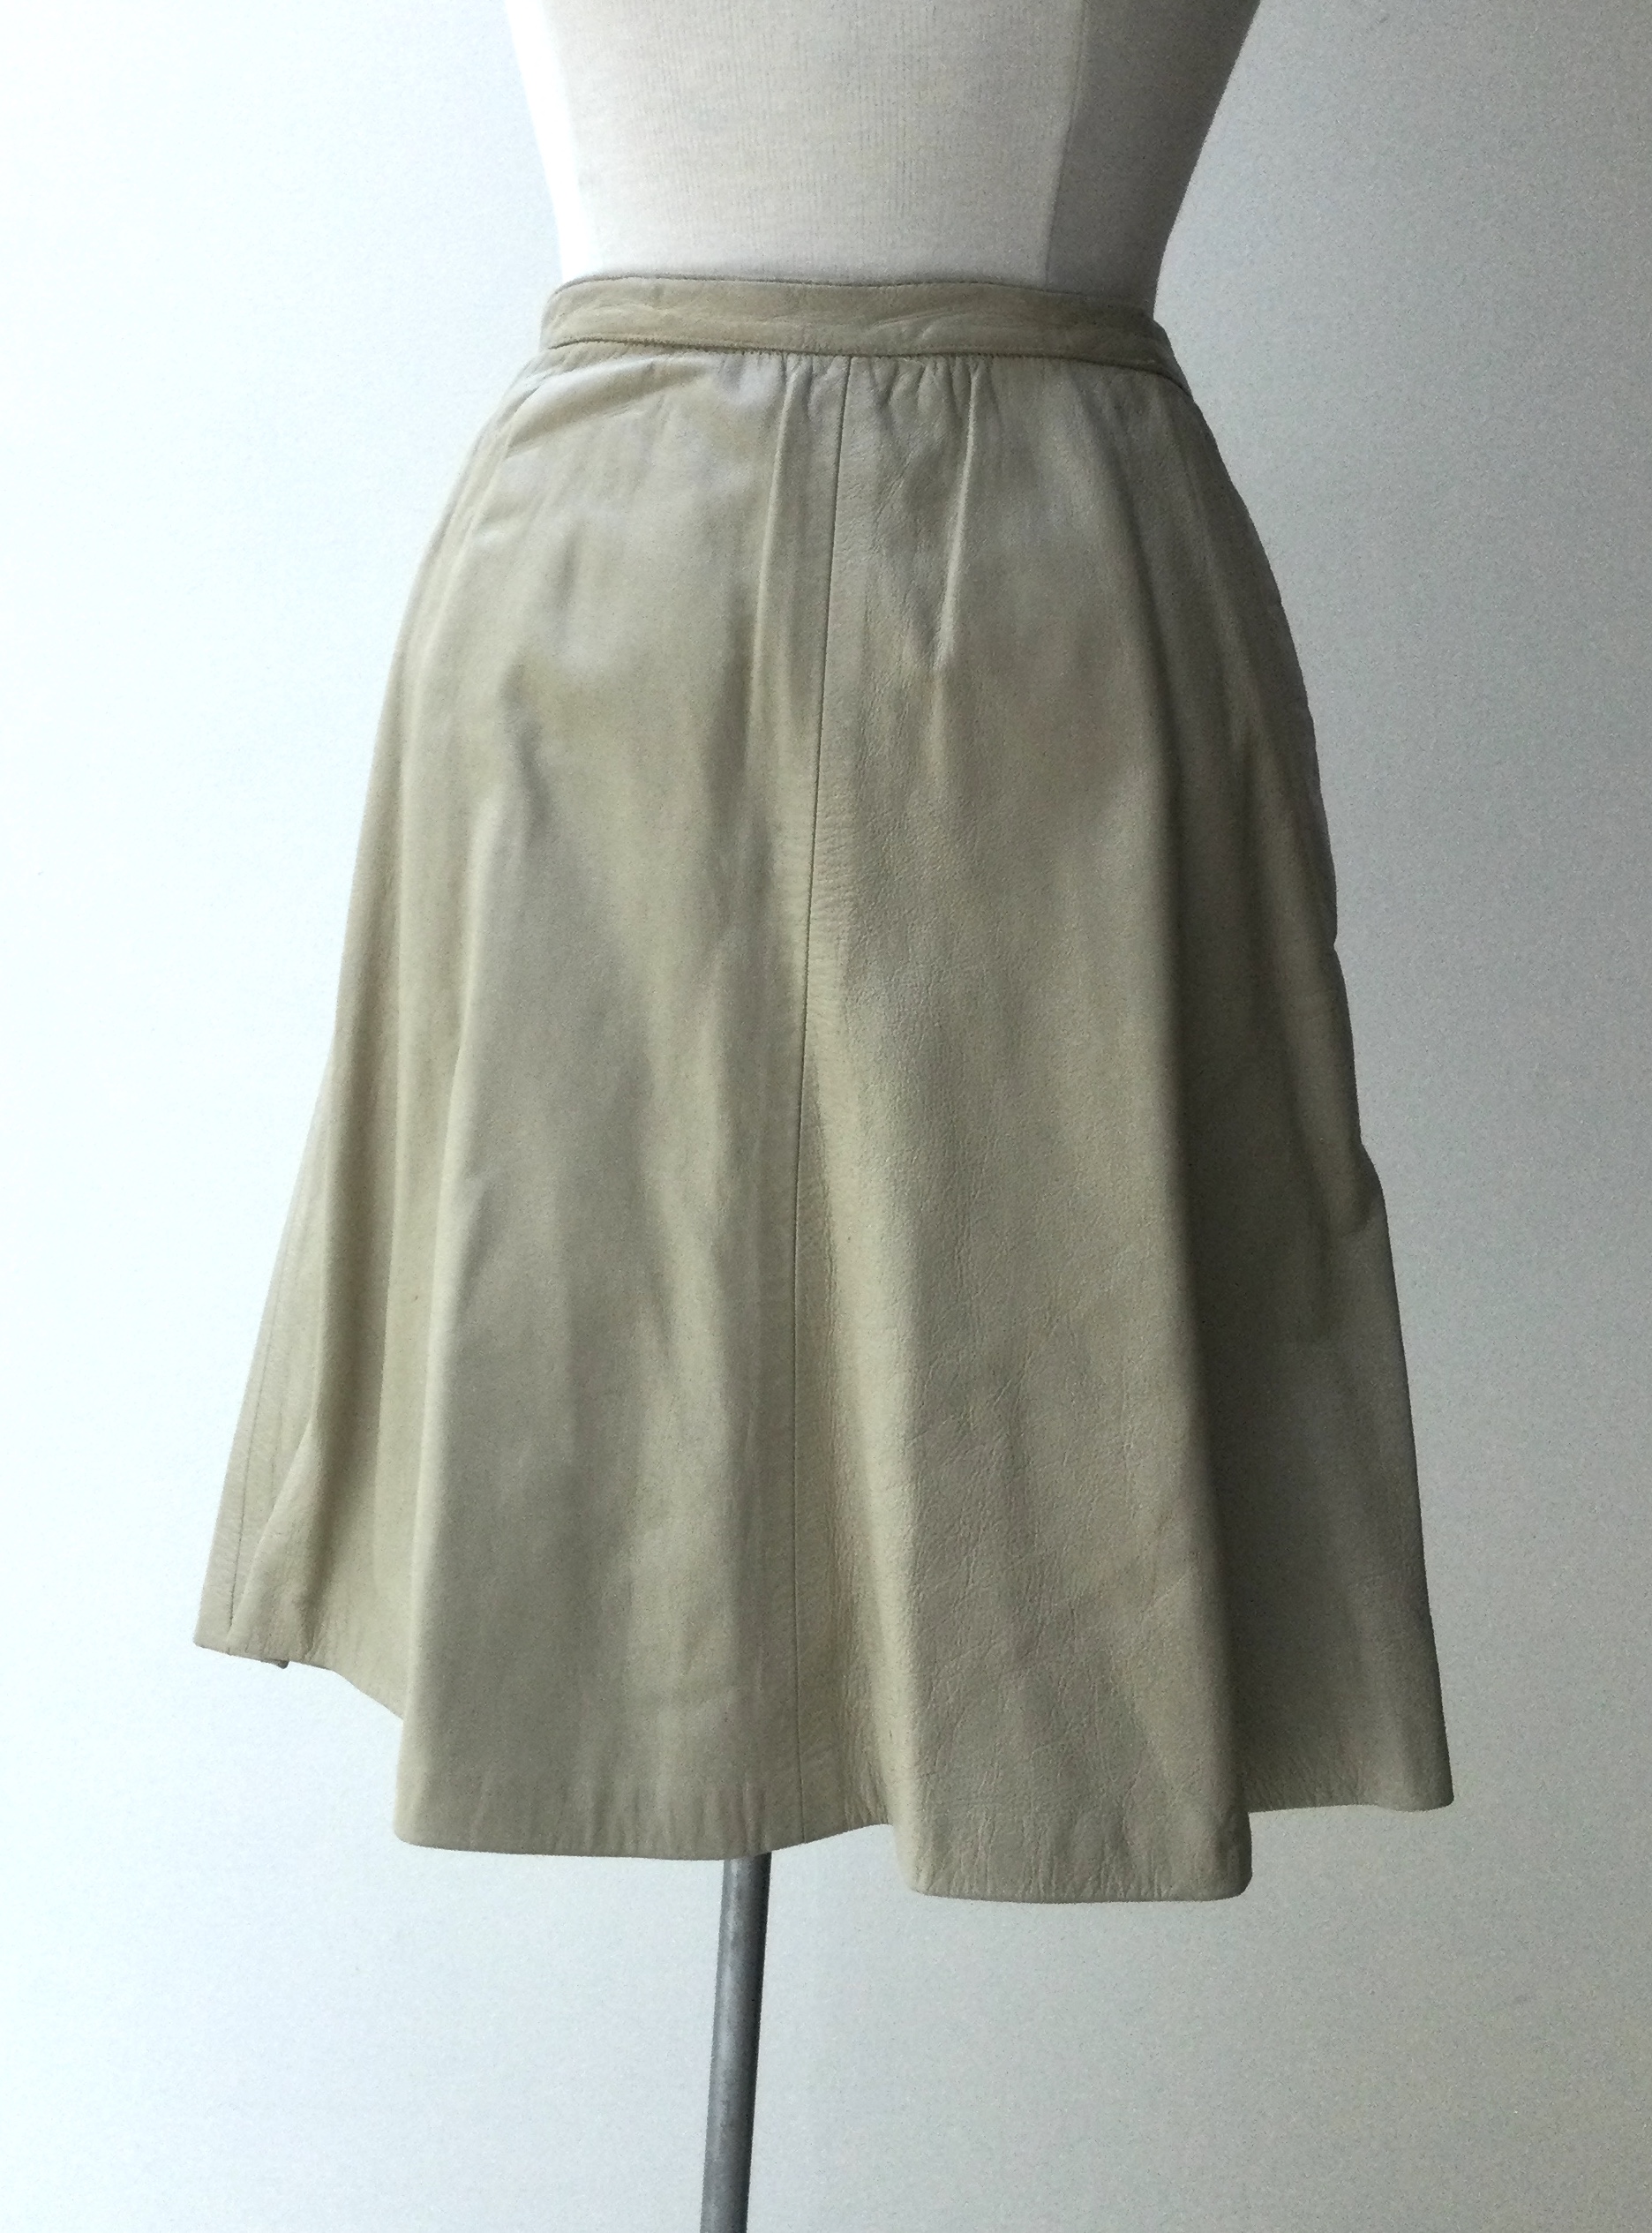 the skirt